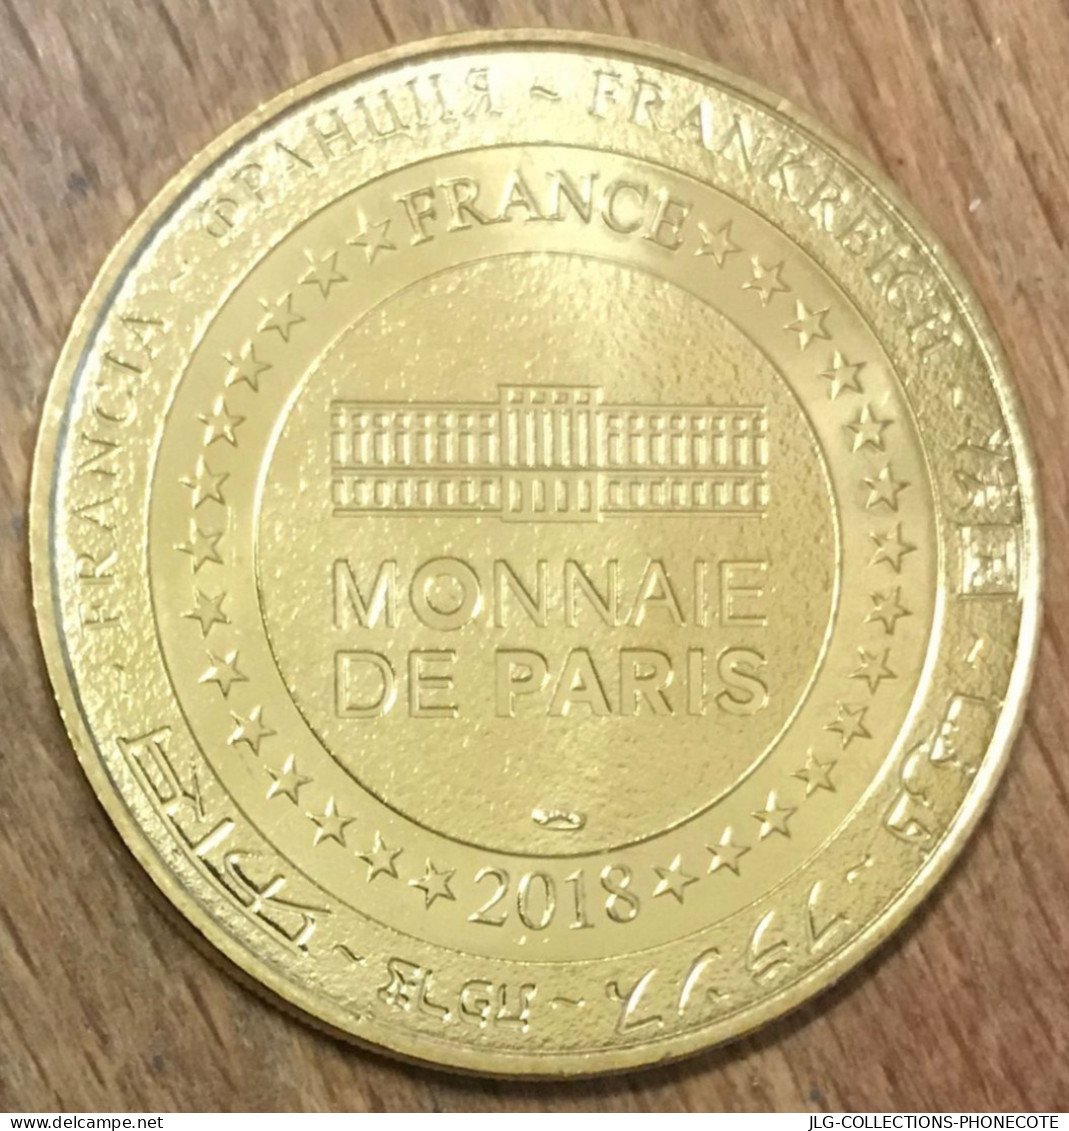 02 CHÂTEAU FORT DE GUISE MDP 2018 MÉDAILLE SOUVENIR MONNAIE DE PARIS JETON TOURISTIQUE TOKENS MEDALS COINS - 2018